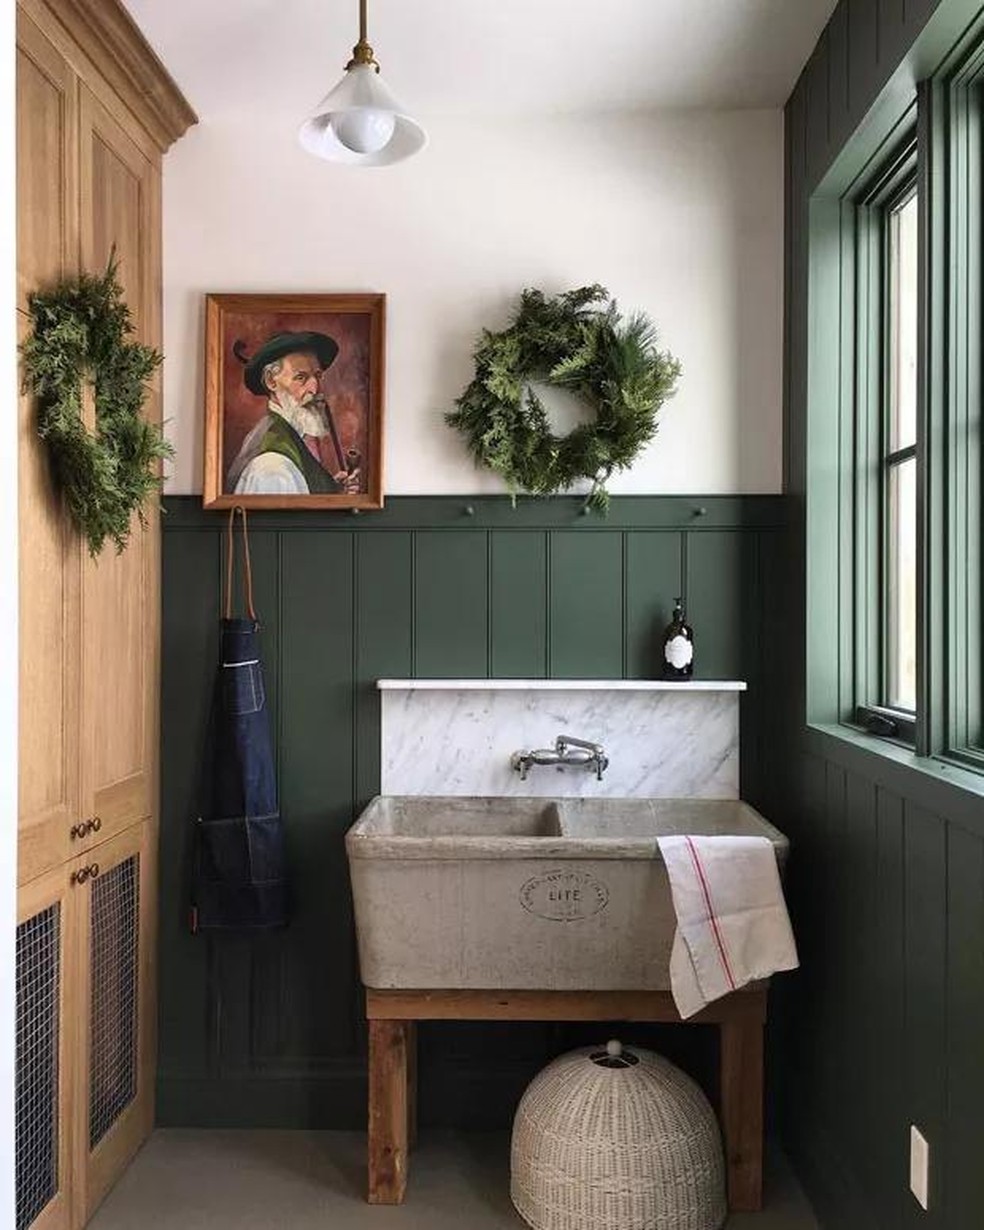 Décor do dia: lavandeira com tons de verde (Foto: Building Walnut Farm / Divulgação) — Foto: Casa Vogue